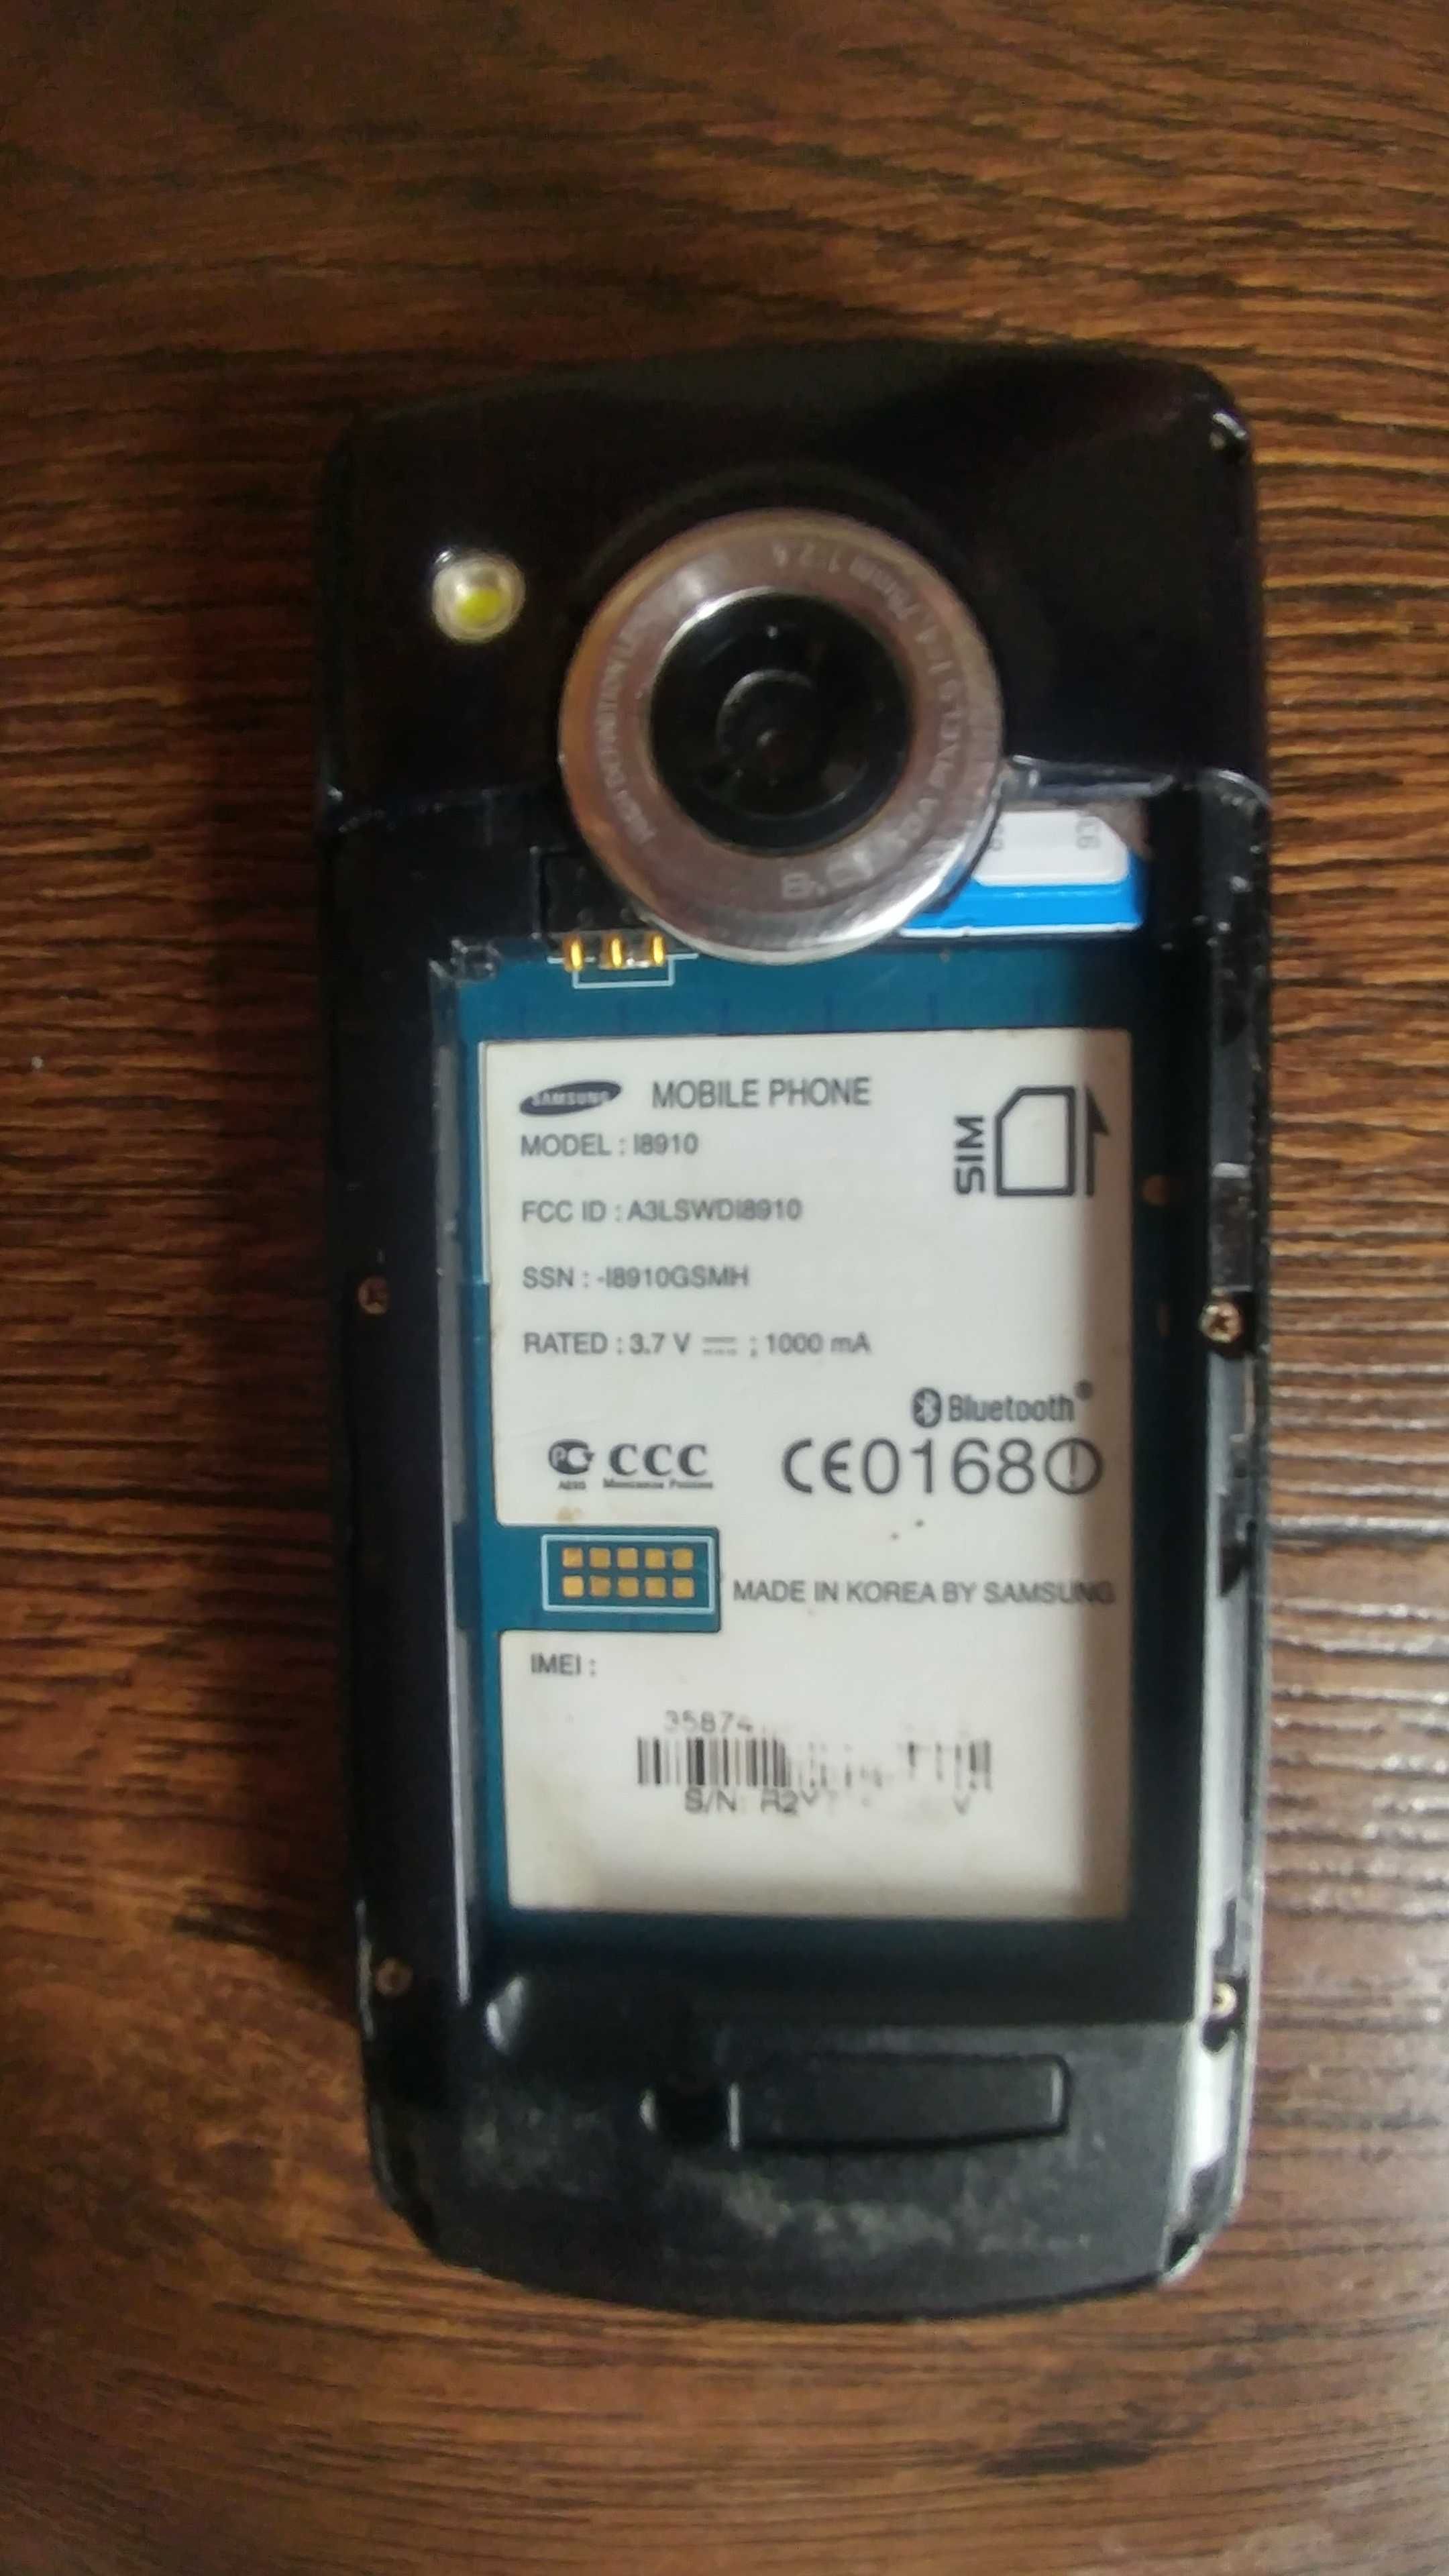 Samsung i8910 OMNIA HD